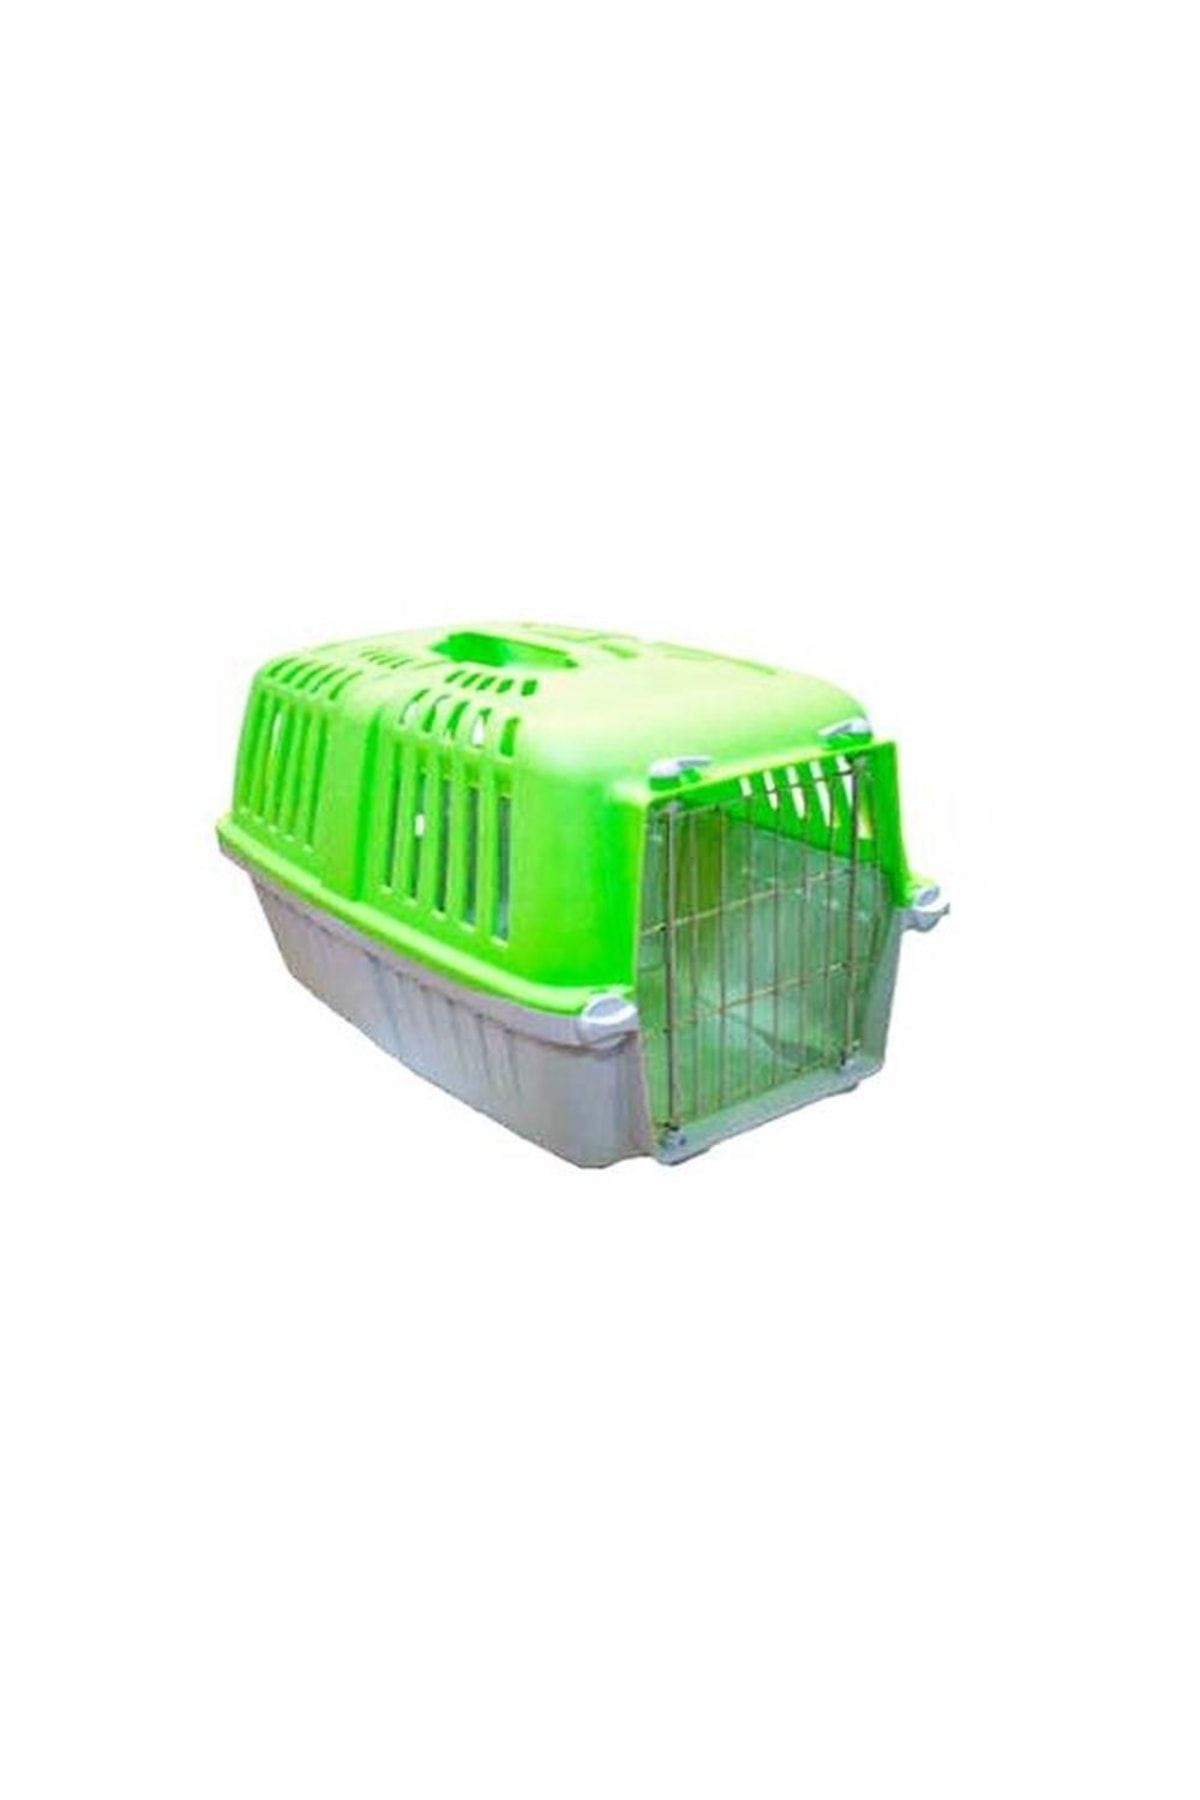 Mio Demir Kapılı Kedi Taşıma Çantası Kabı 32x49x33cm Renk-yeşil